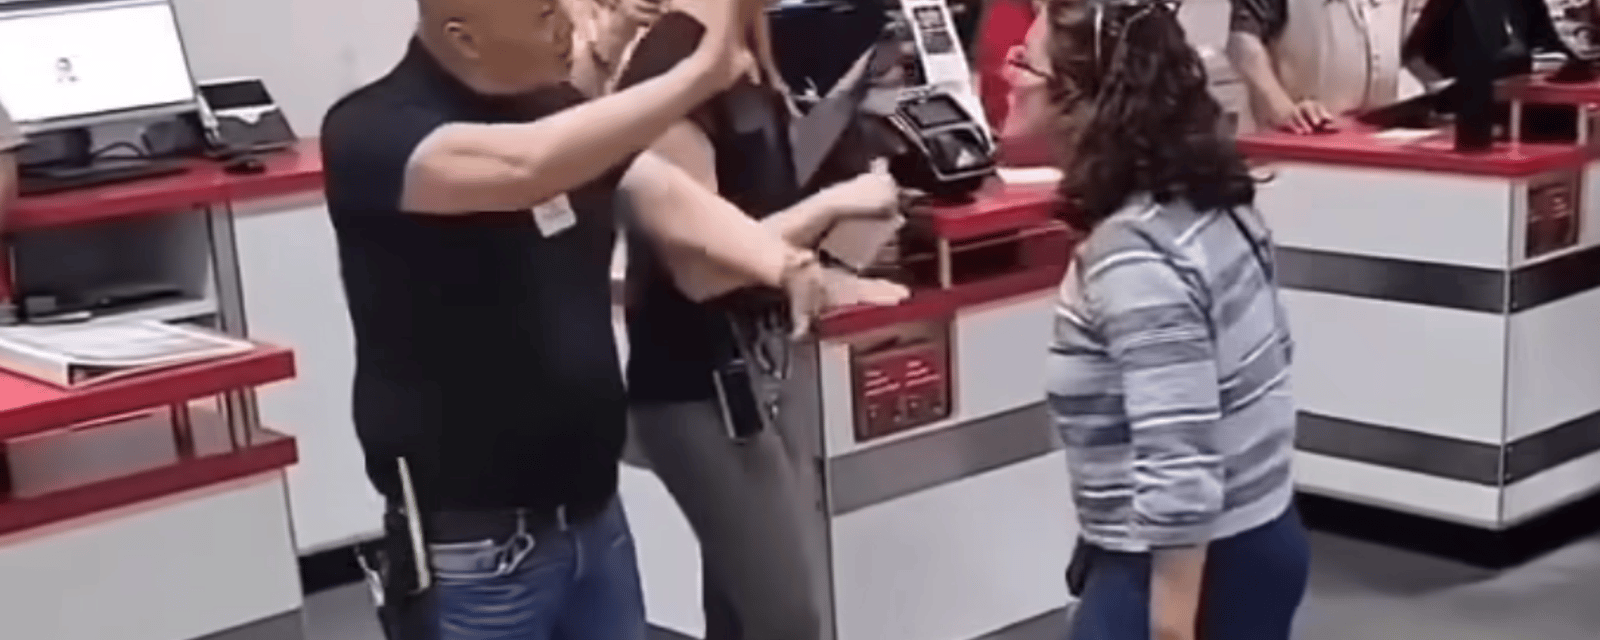 Une femme en furie s'en prend à des employés chez Costco